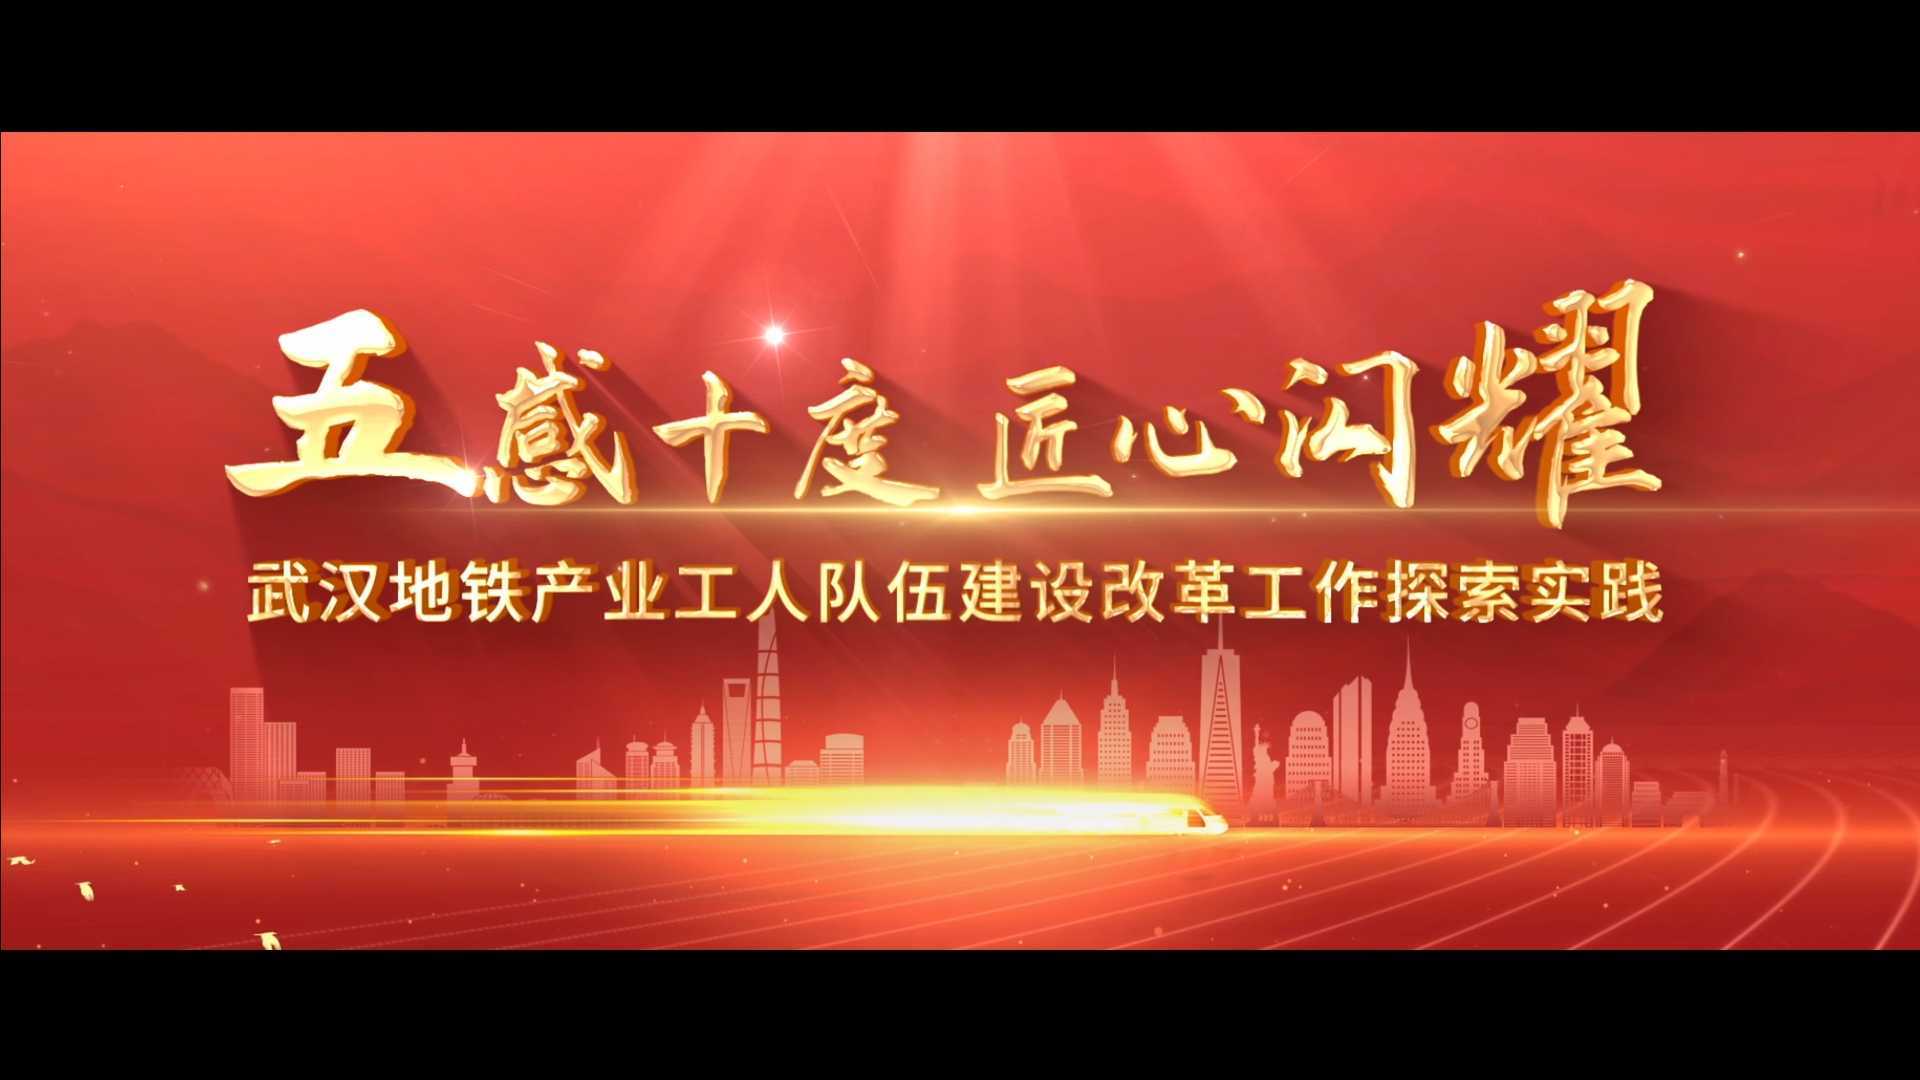 武汉地铁产业工人队伍建设改革工作探索实践《五感十度 匠心闪耀》